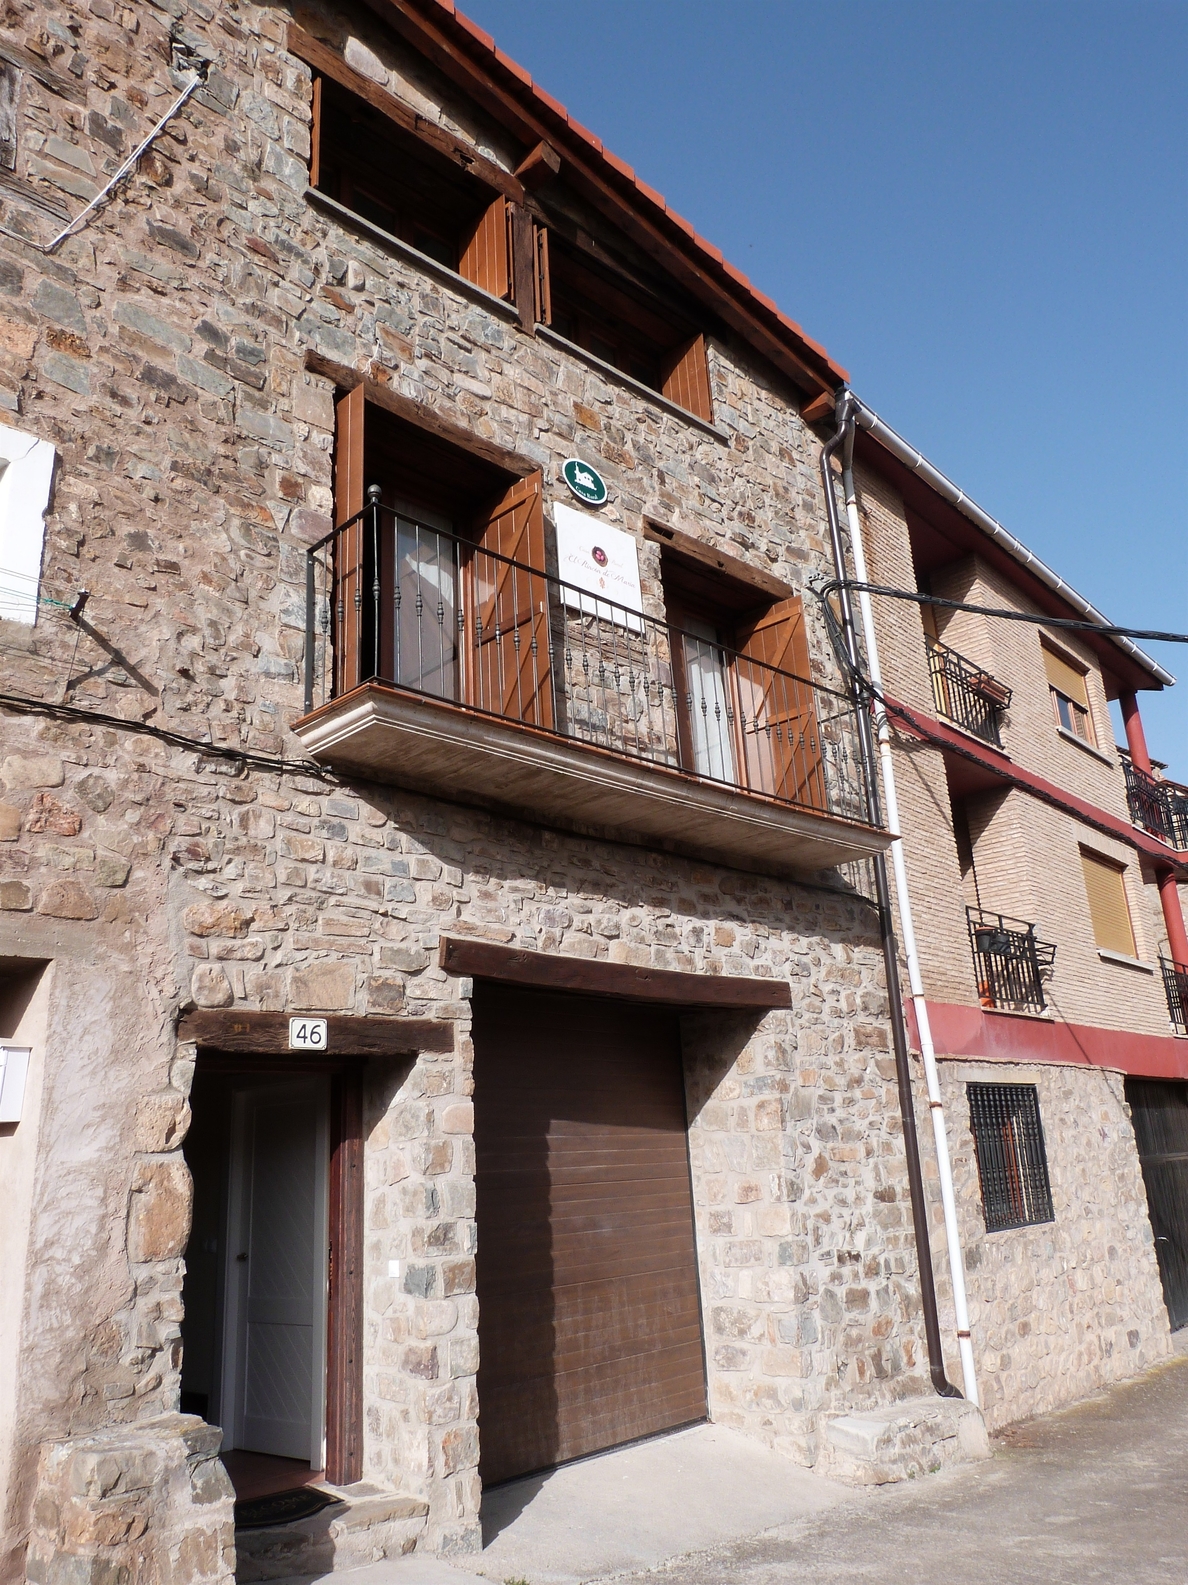 Bayo destaca el «potencial turístico» de La Rioja con apertura de nuevos establecimientos y crecida de visitantes